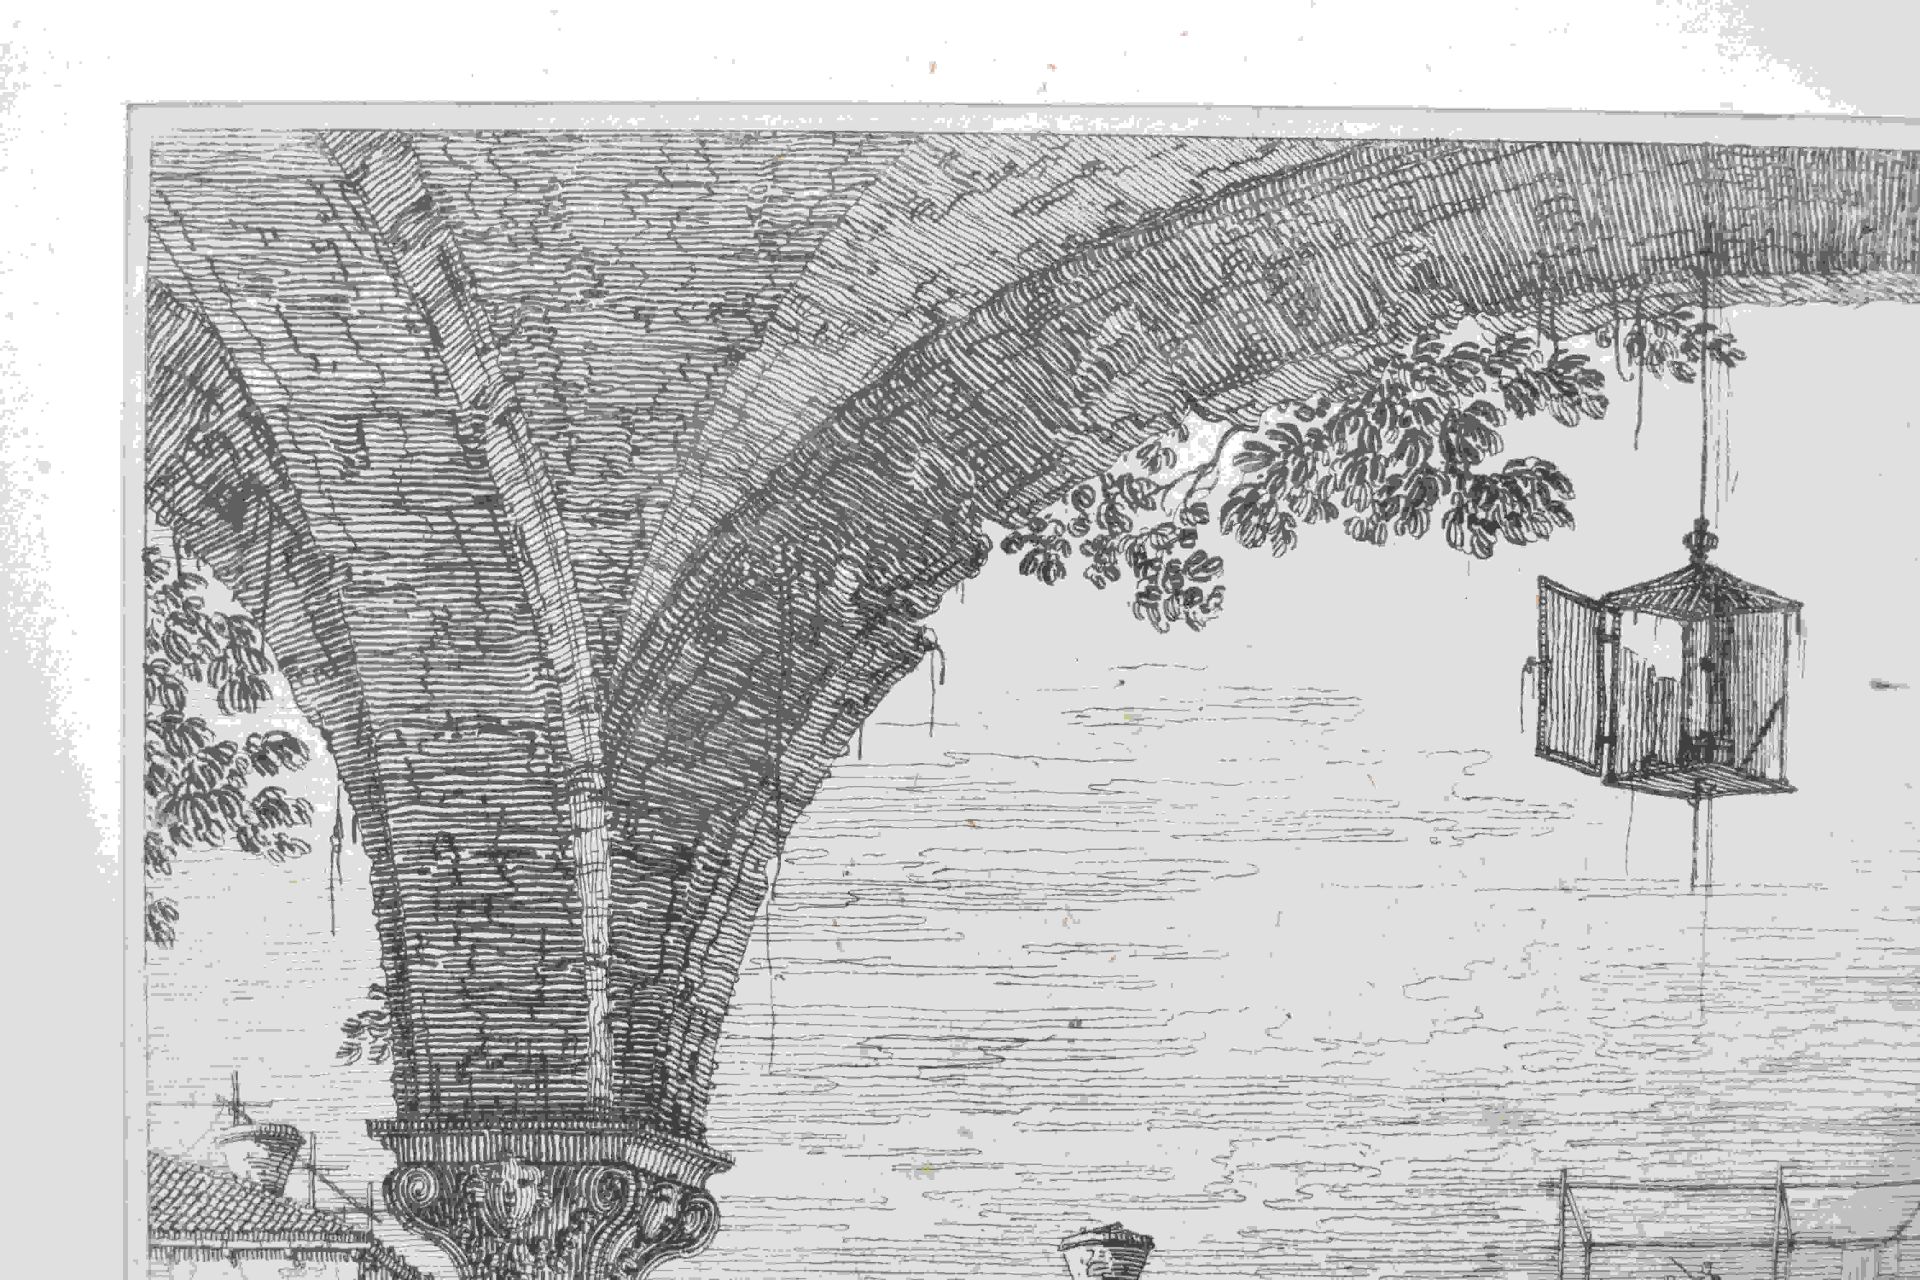 Canal, Giovanni Antonio, gen. Canaletto: Il portico con la lanterna - Image 7 of 24